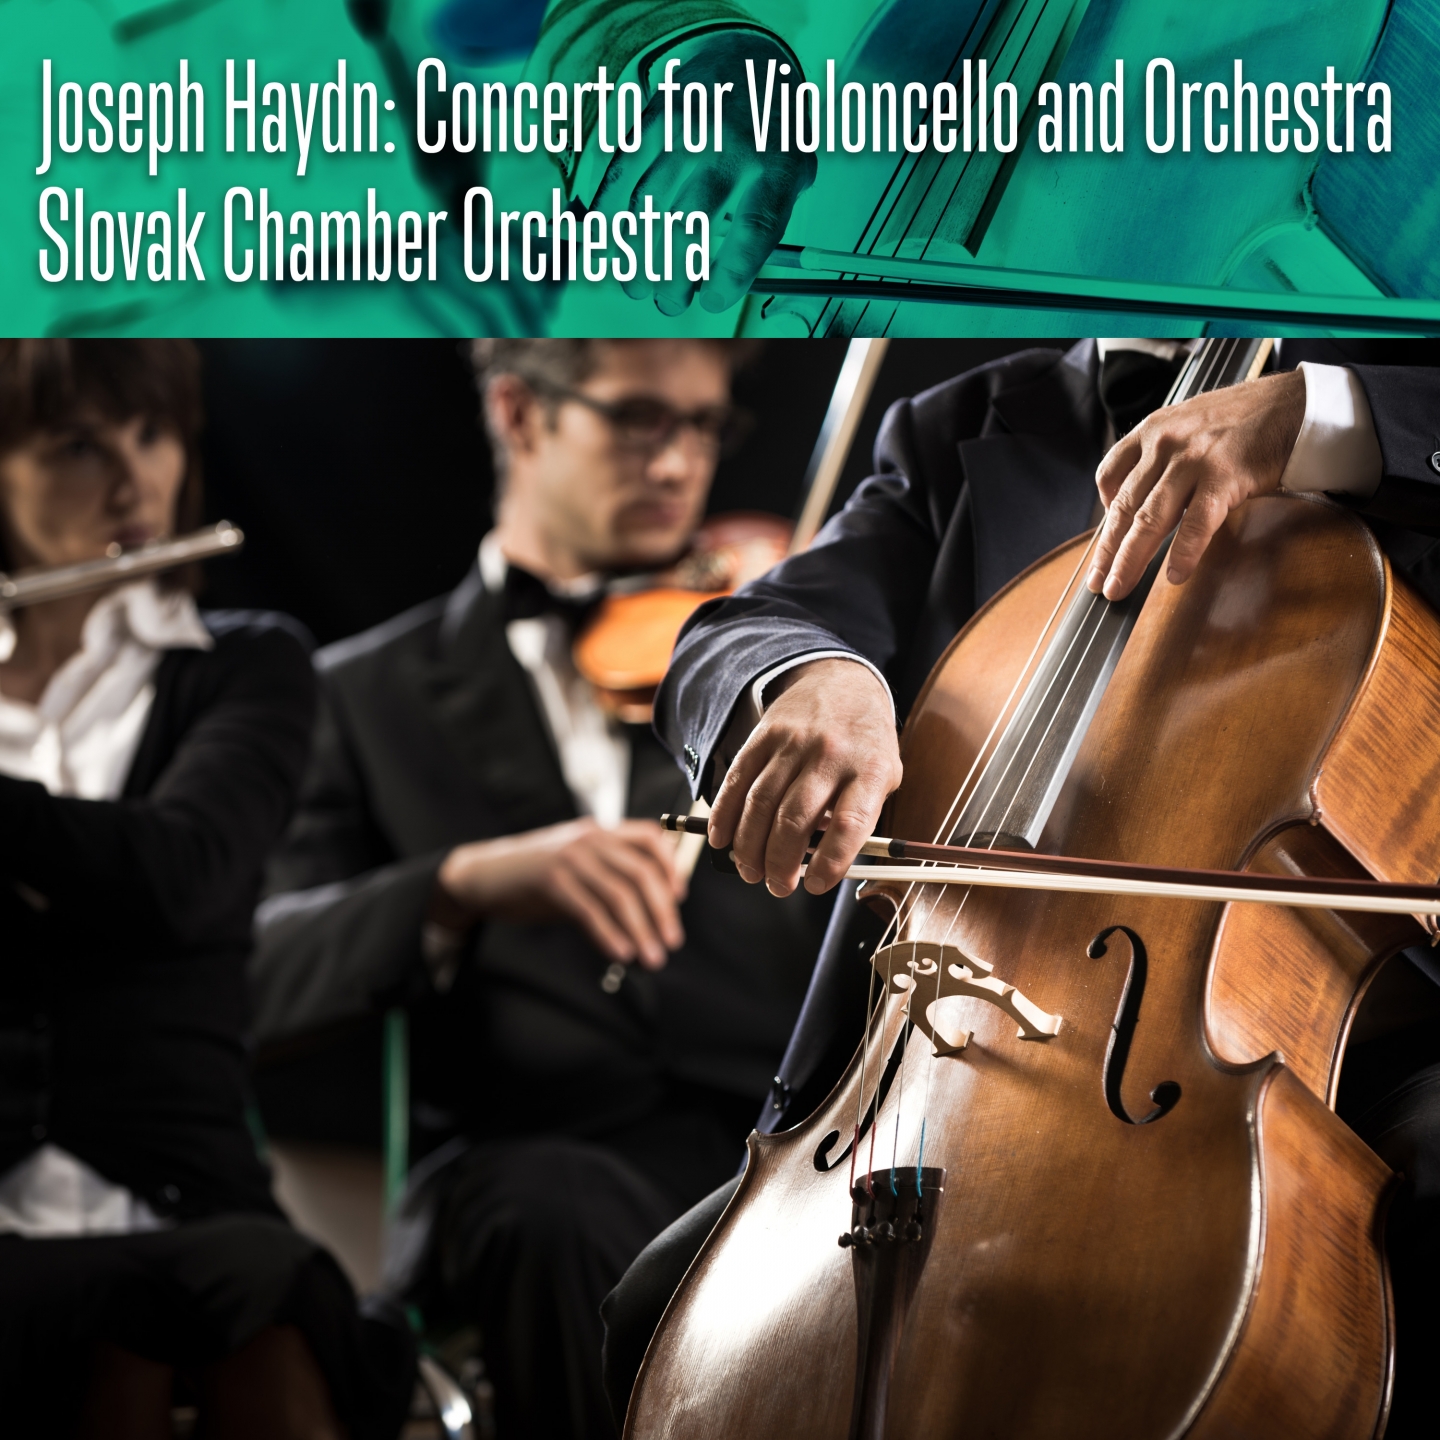 Joseph Haydn: Concerto for Violoncello and Orchestra